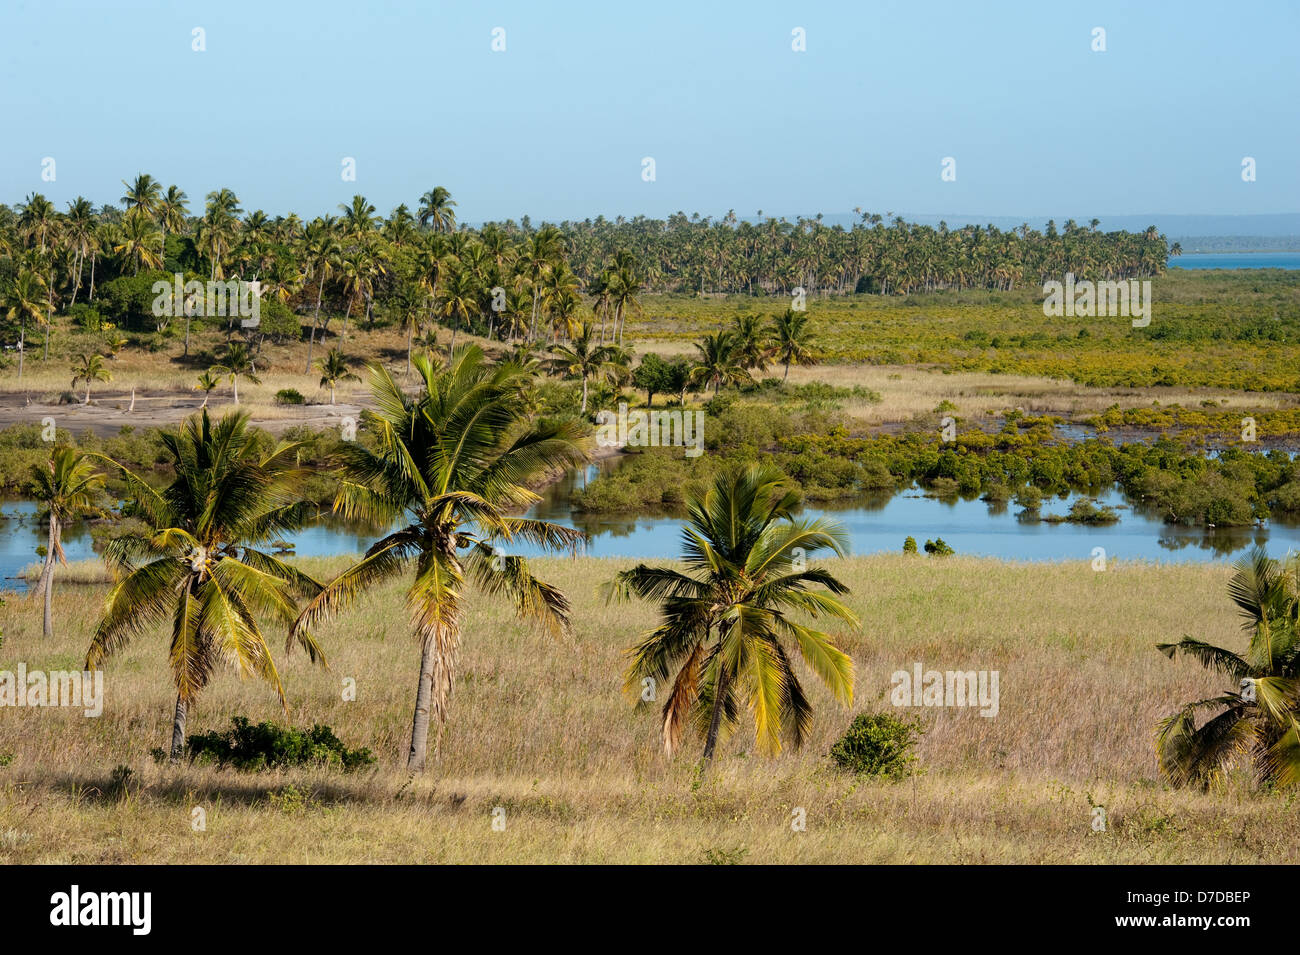 Les mangroves et palmiers, Tofo (Mozambique) Banque D'Images